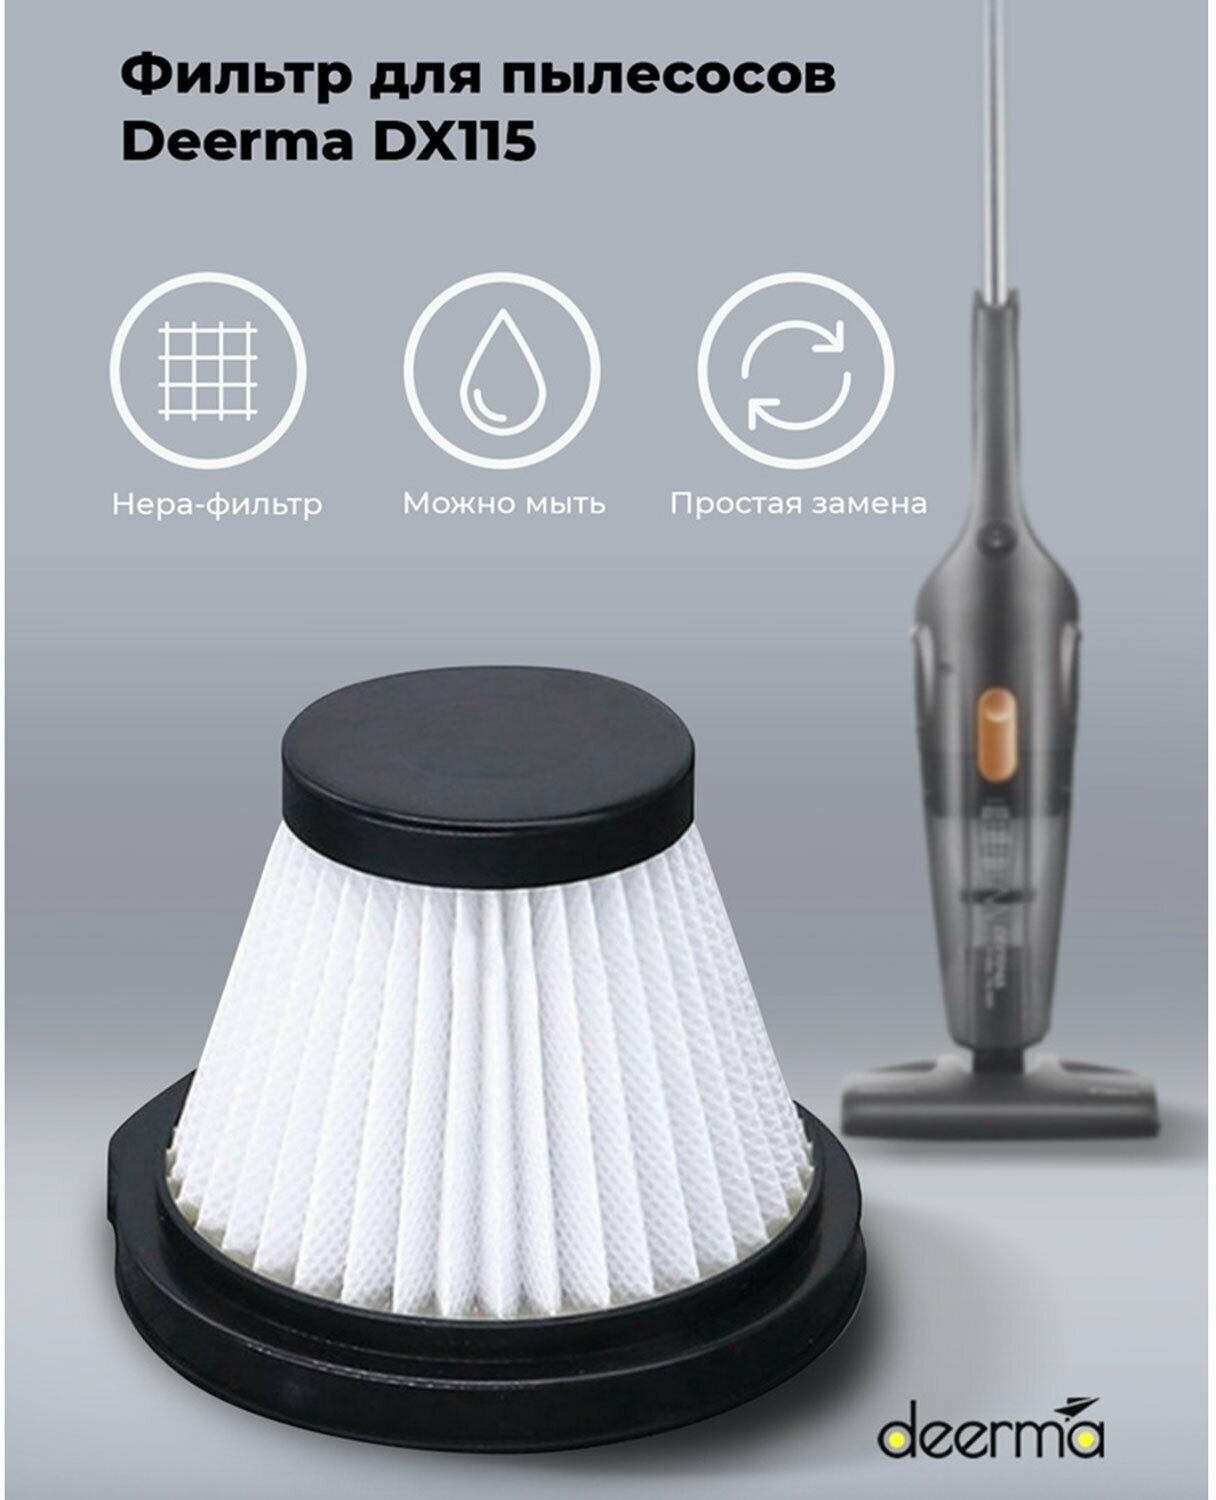 Фильтр для пылесоса DEERMA DX115C, DX115C, Hepa